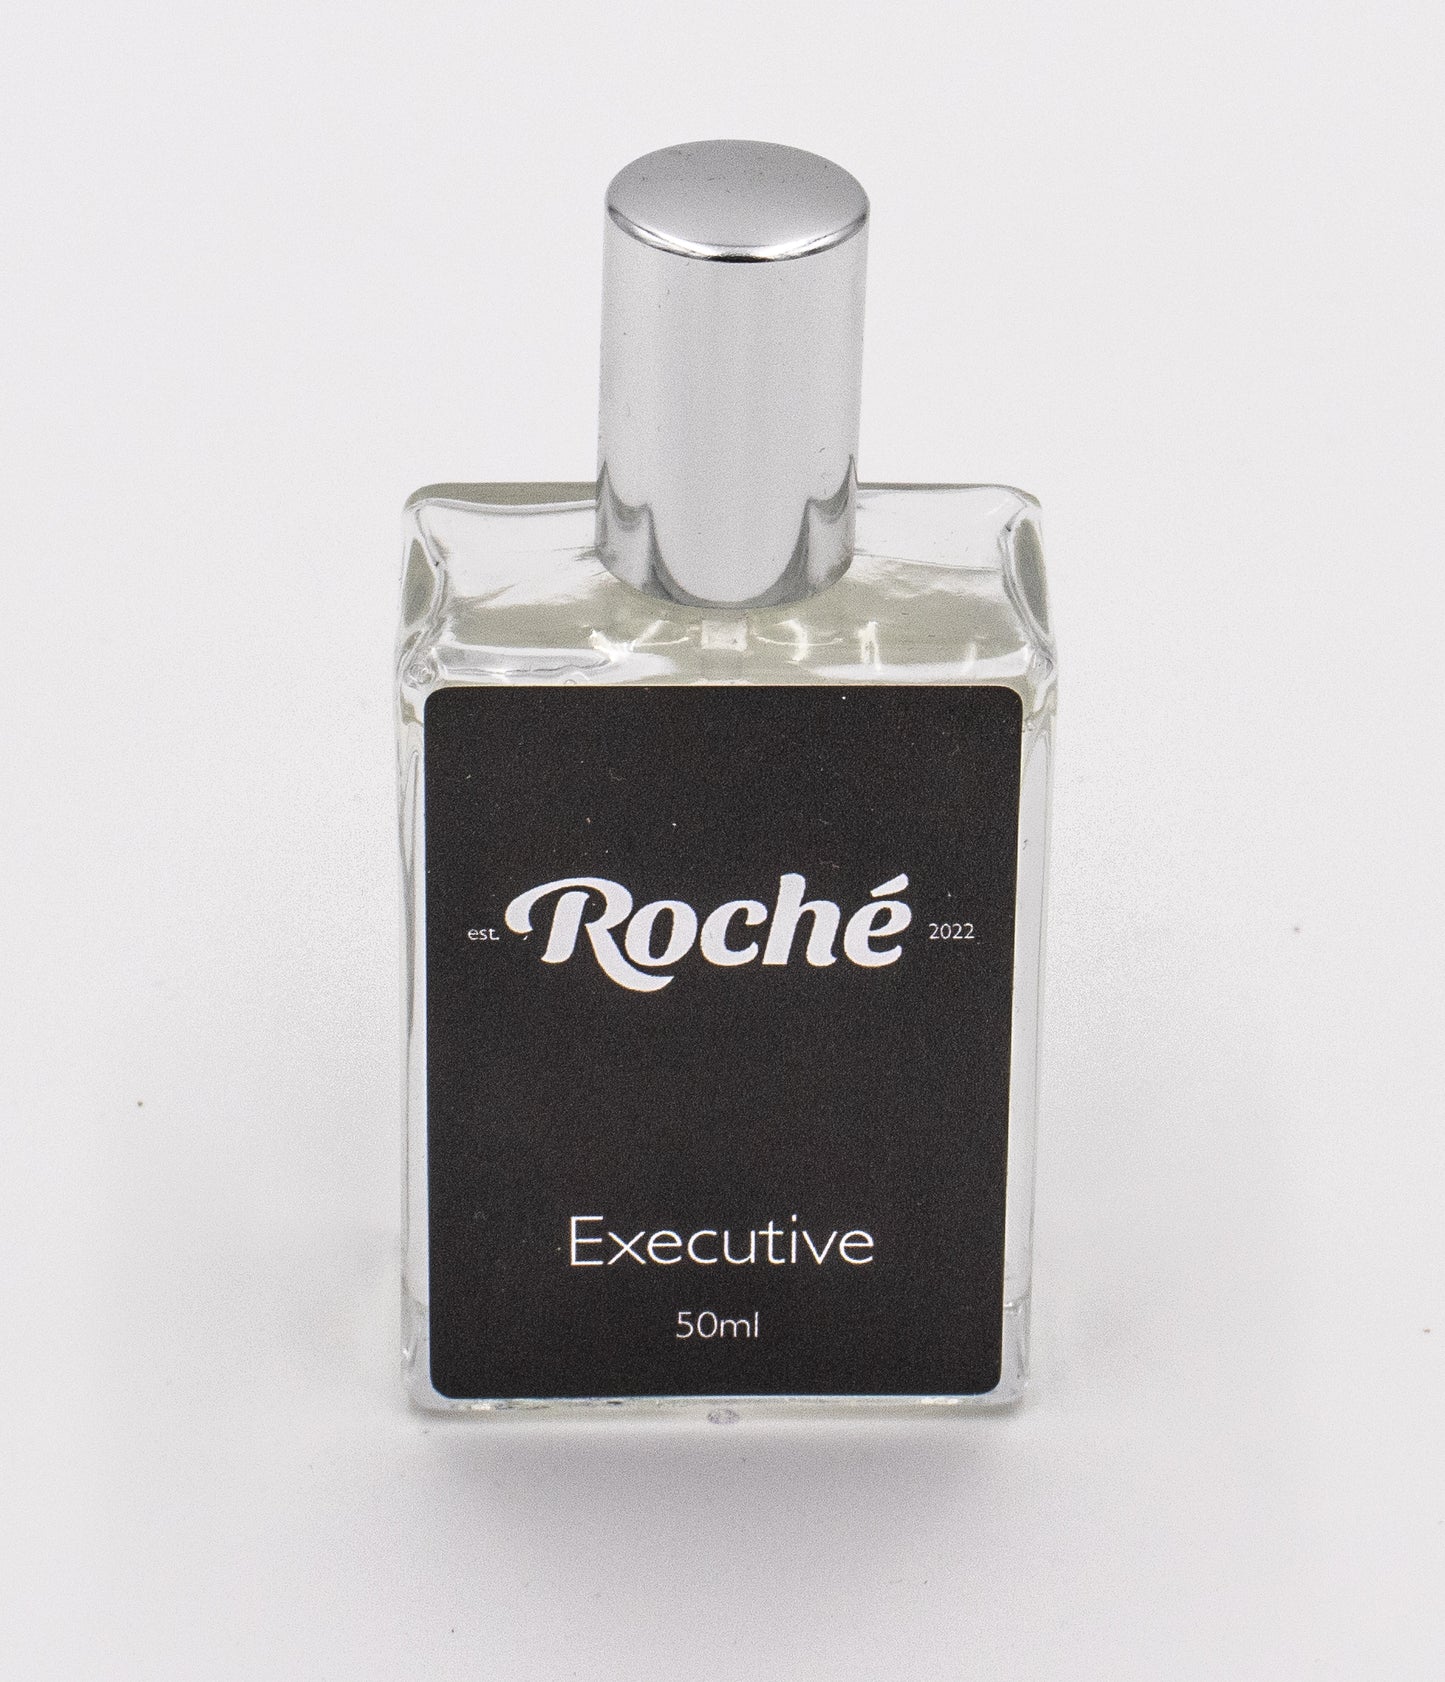 Executive EDP 50ml - Roché